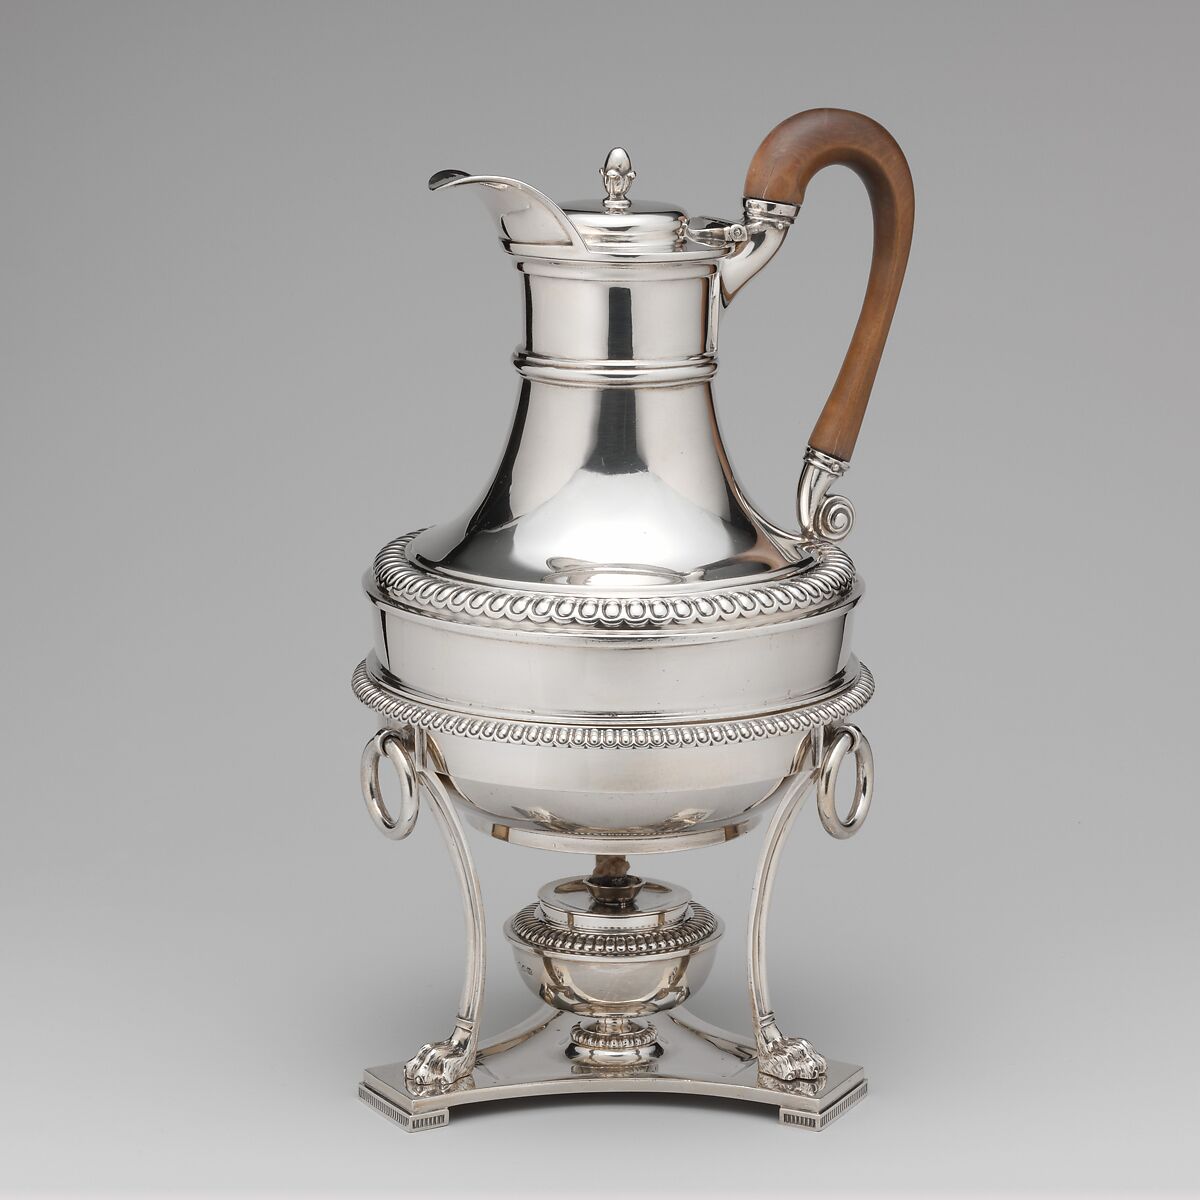 Hot water jug, Paul Storr (British, 1771–1844), Silver, wood, British, London 